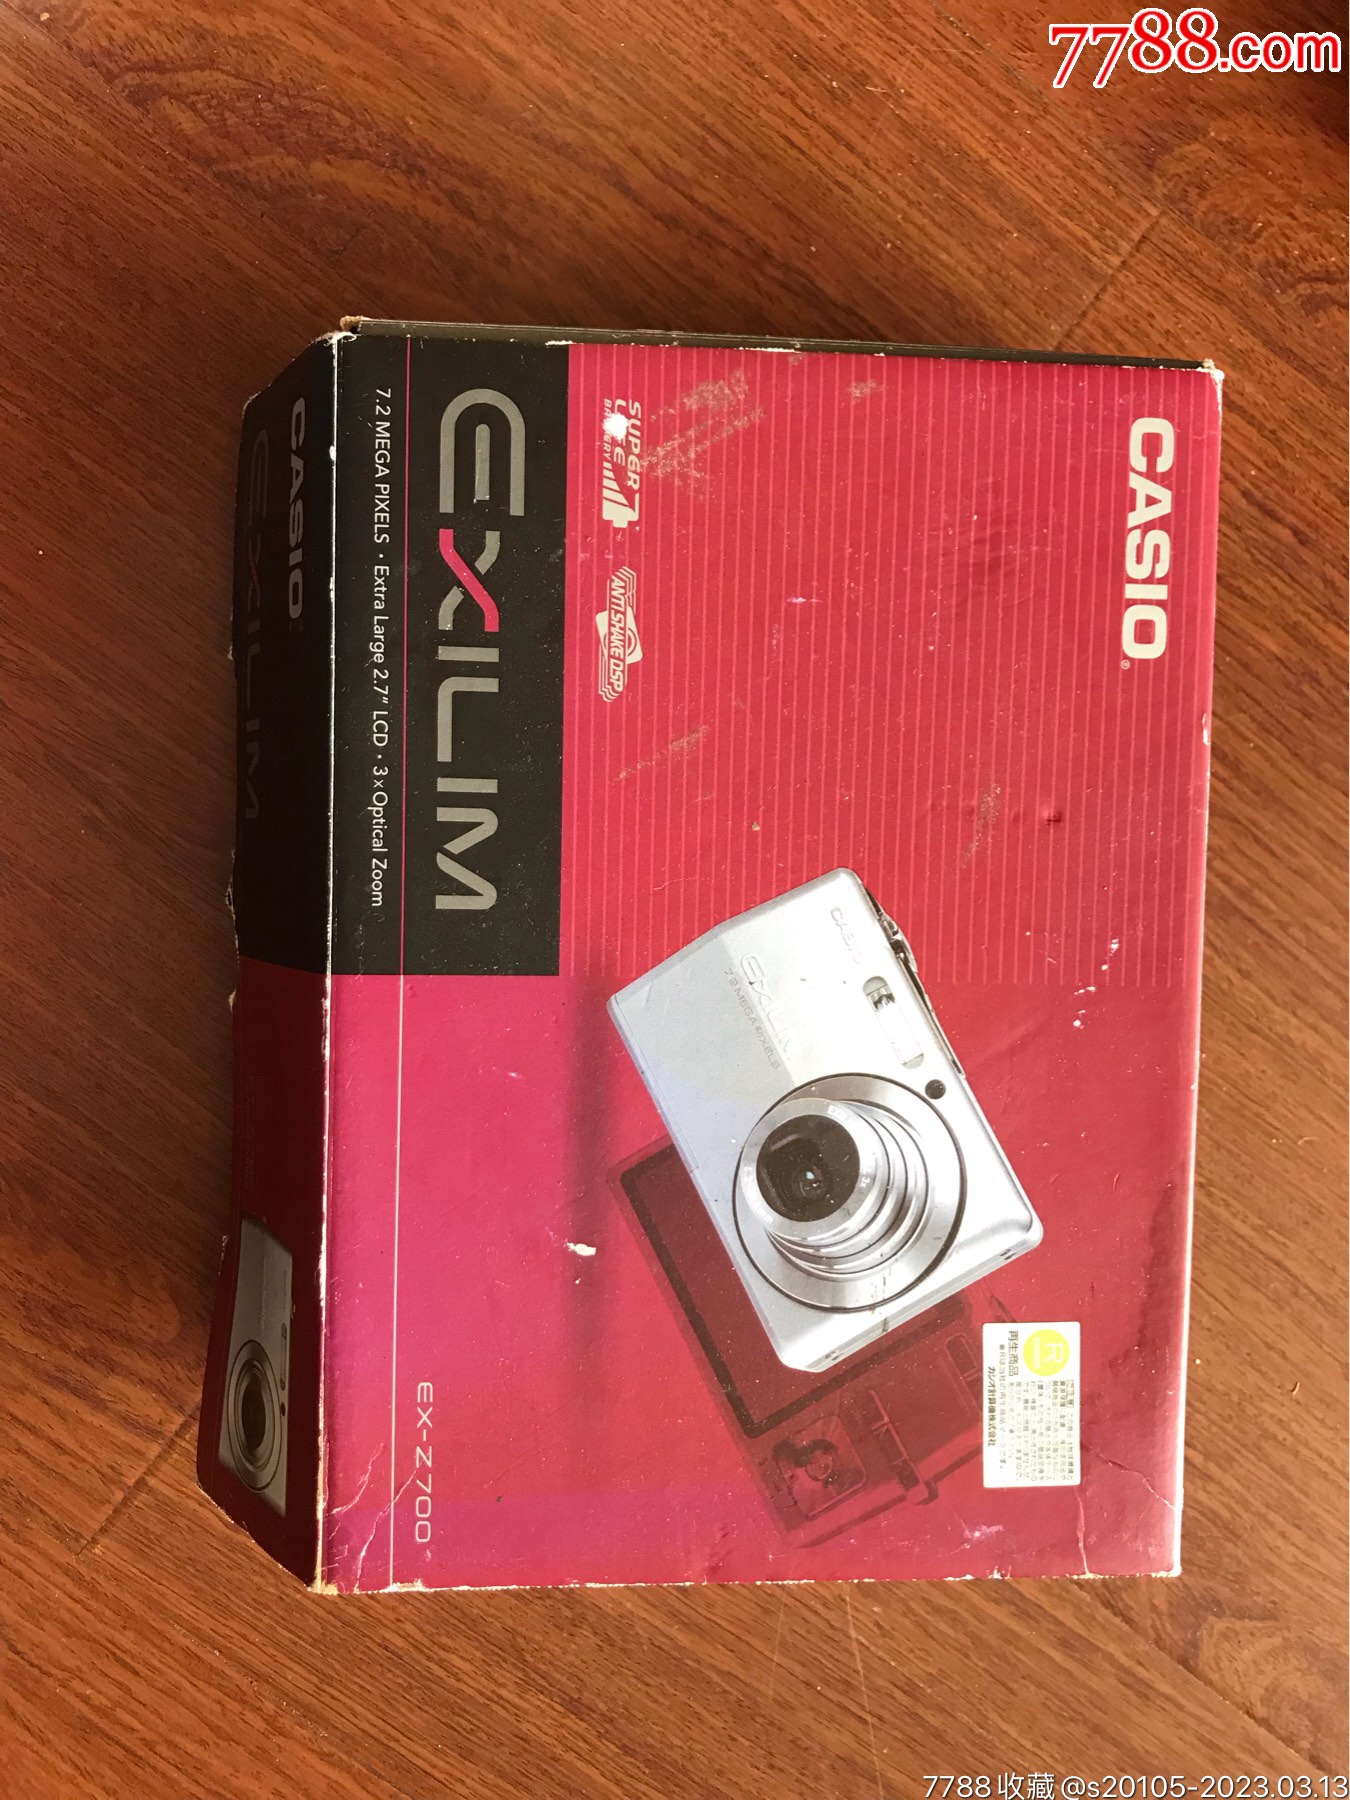 卡西欧高速长焦相机后续力作 EX-ZR800评测_天极网